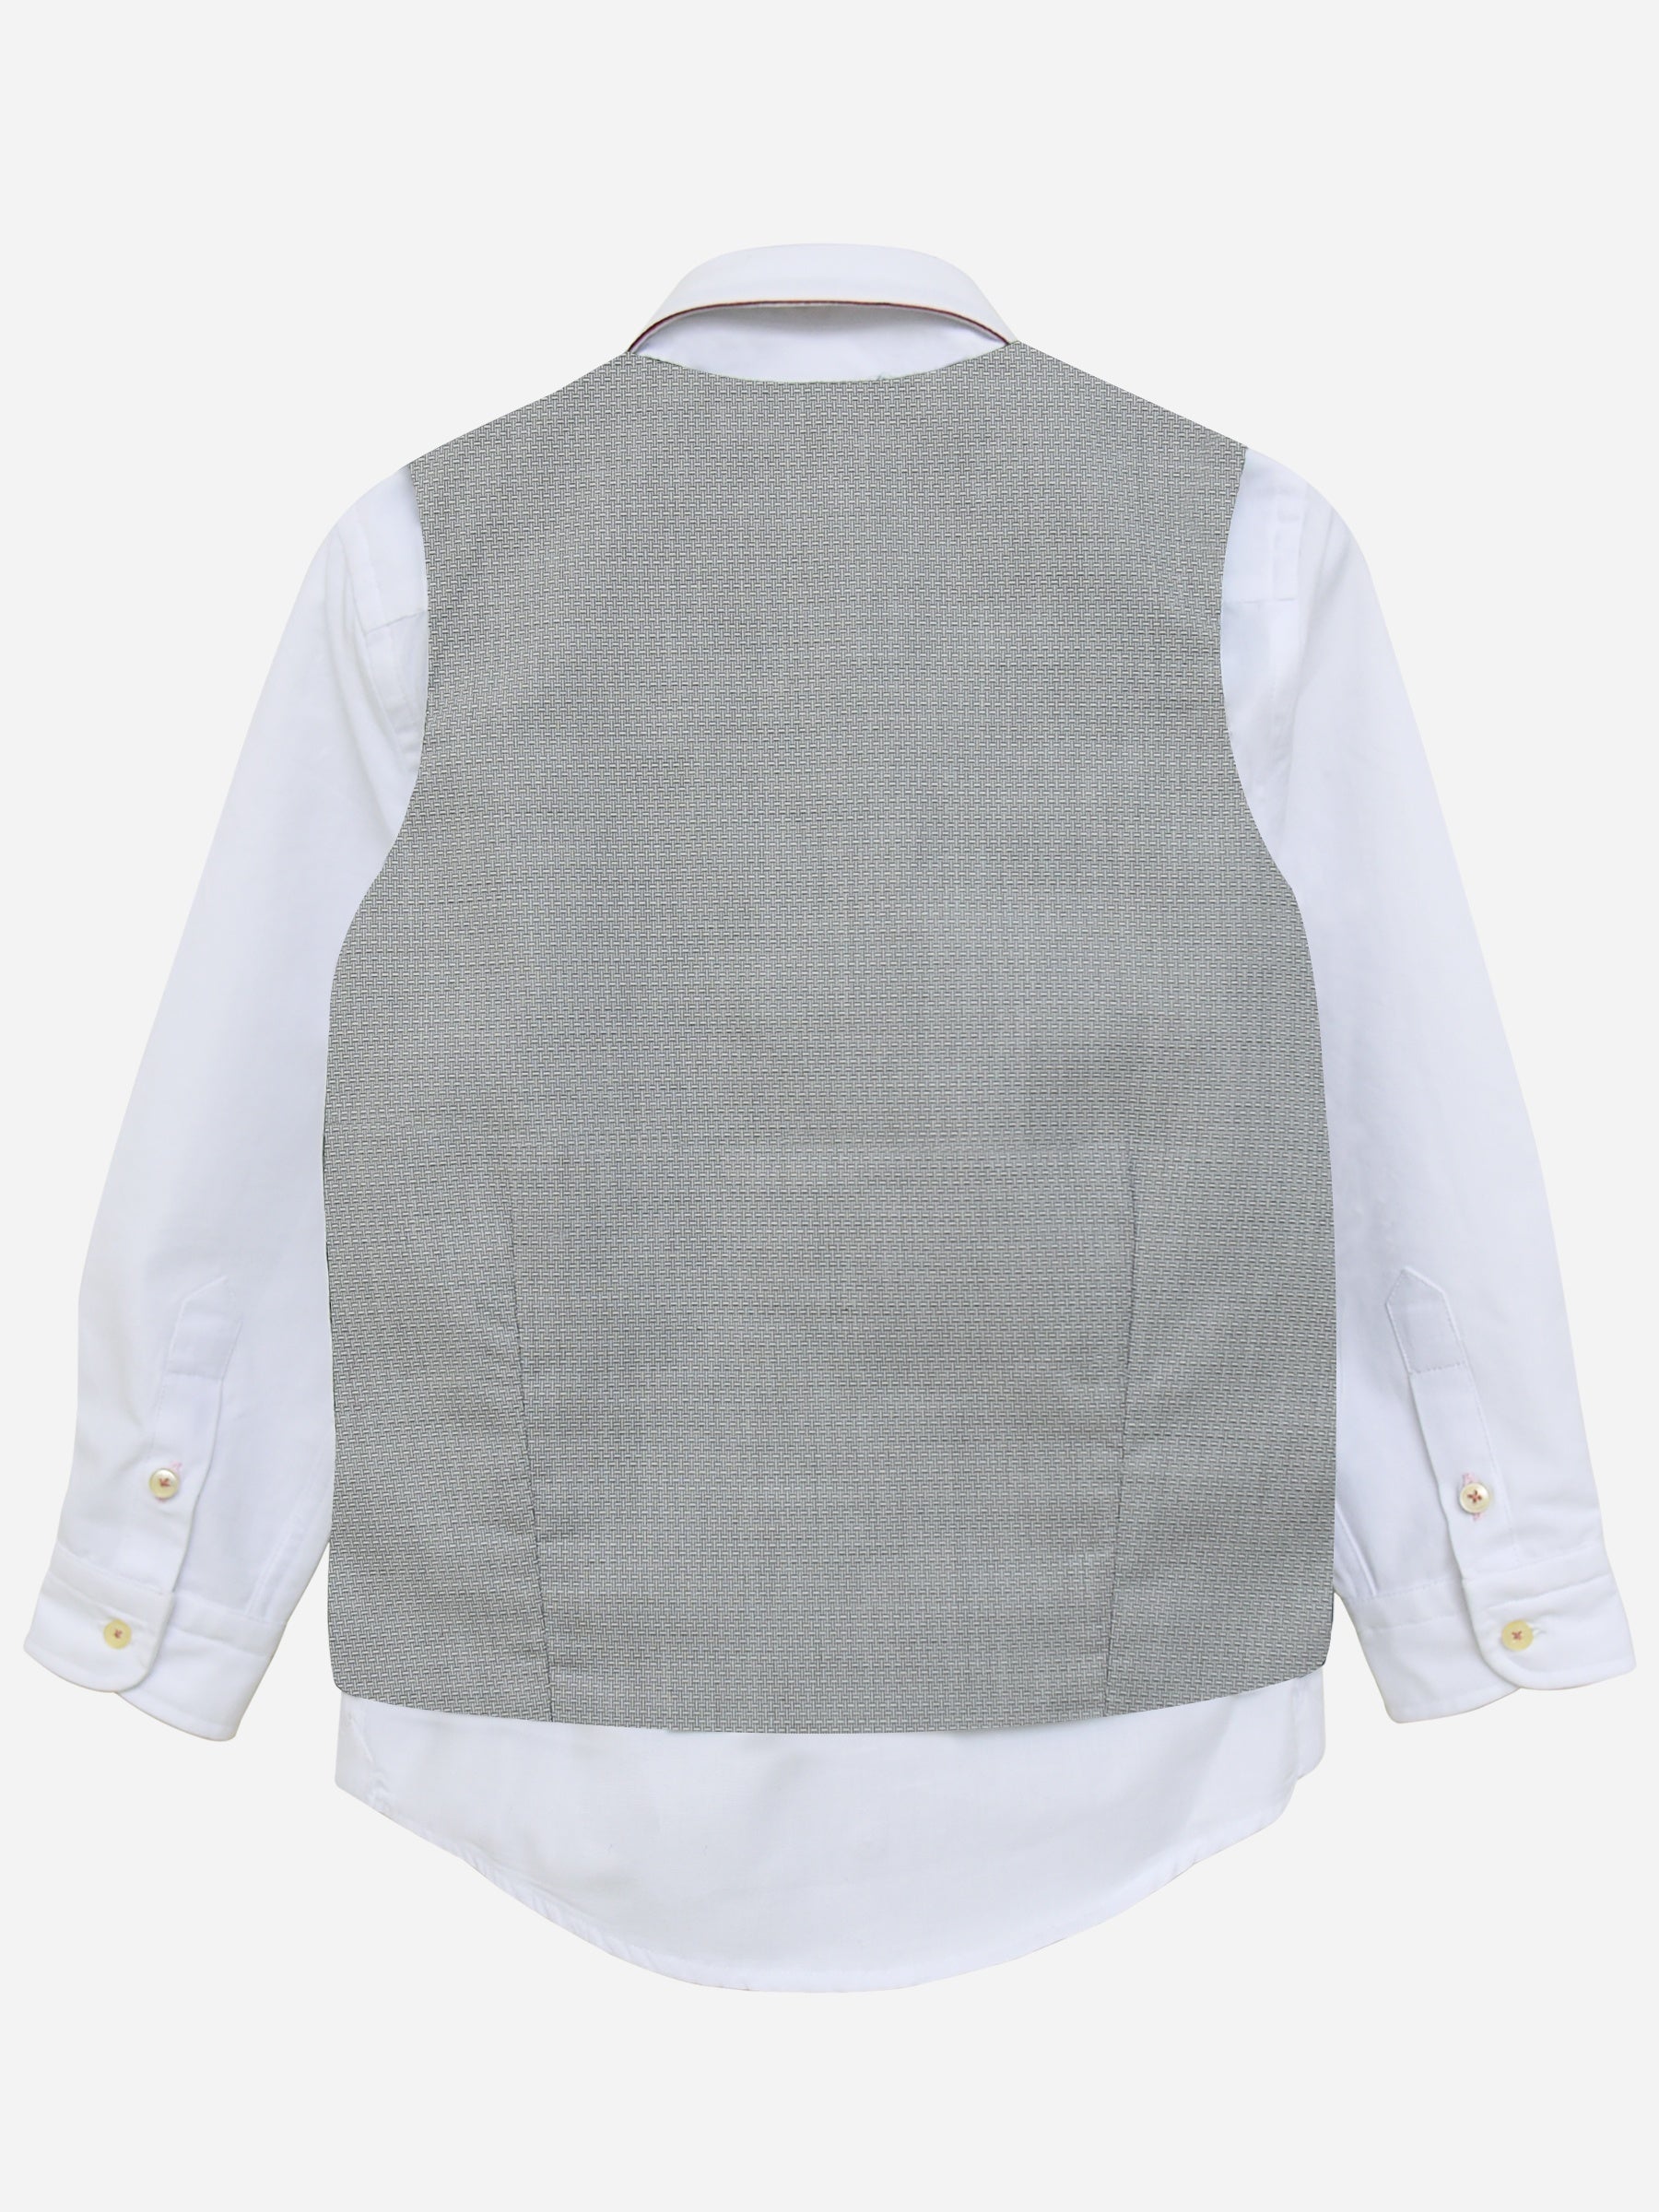 Grey Structured Suit Waistcoat Brumano Pakistan